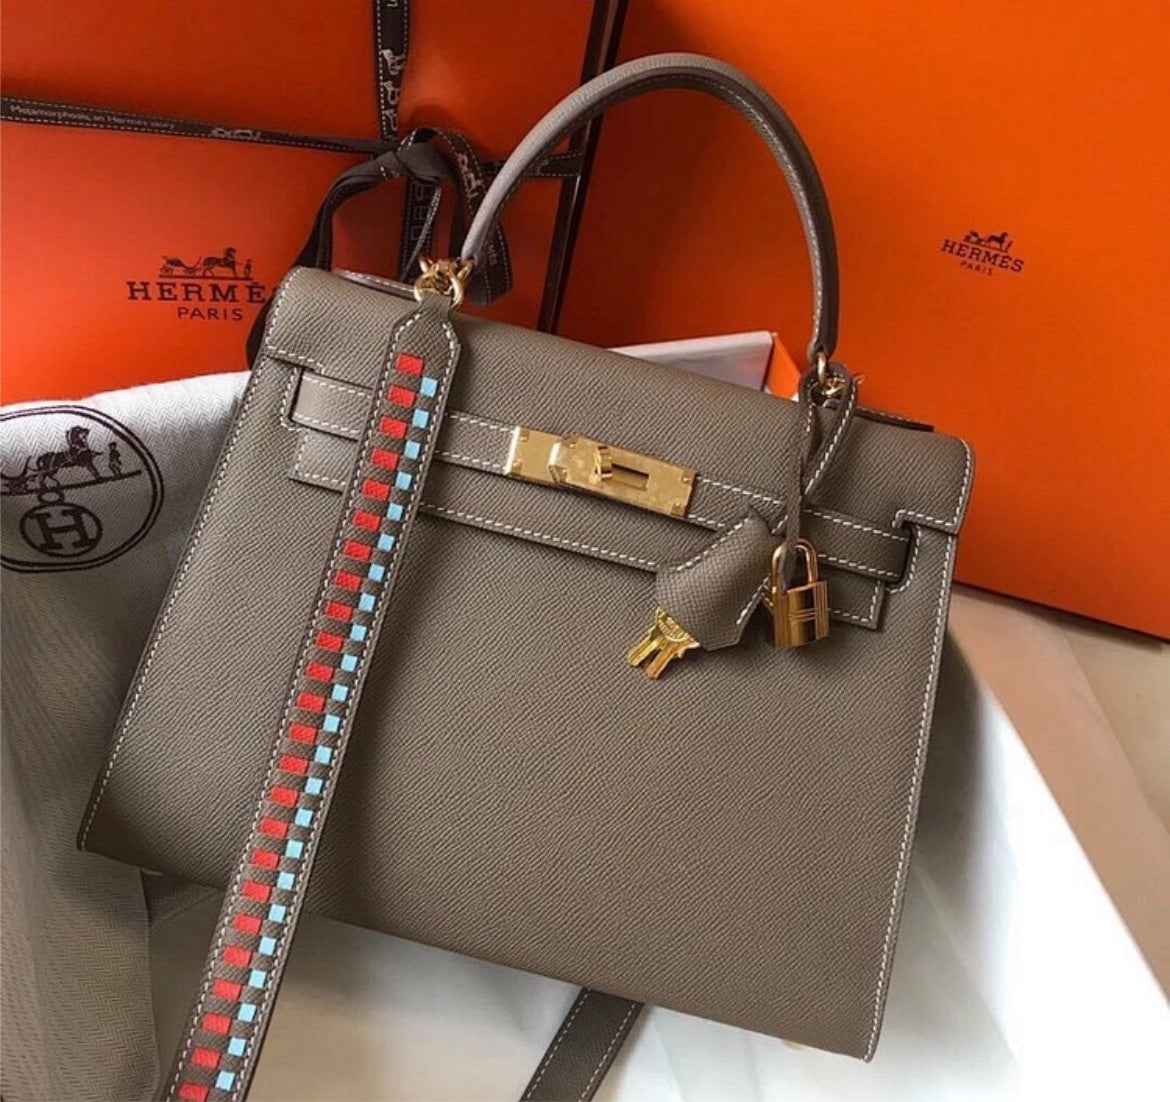 New woman Hermes Handbag